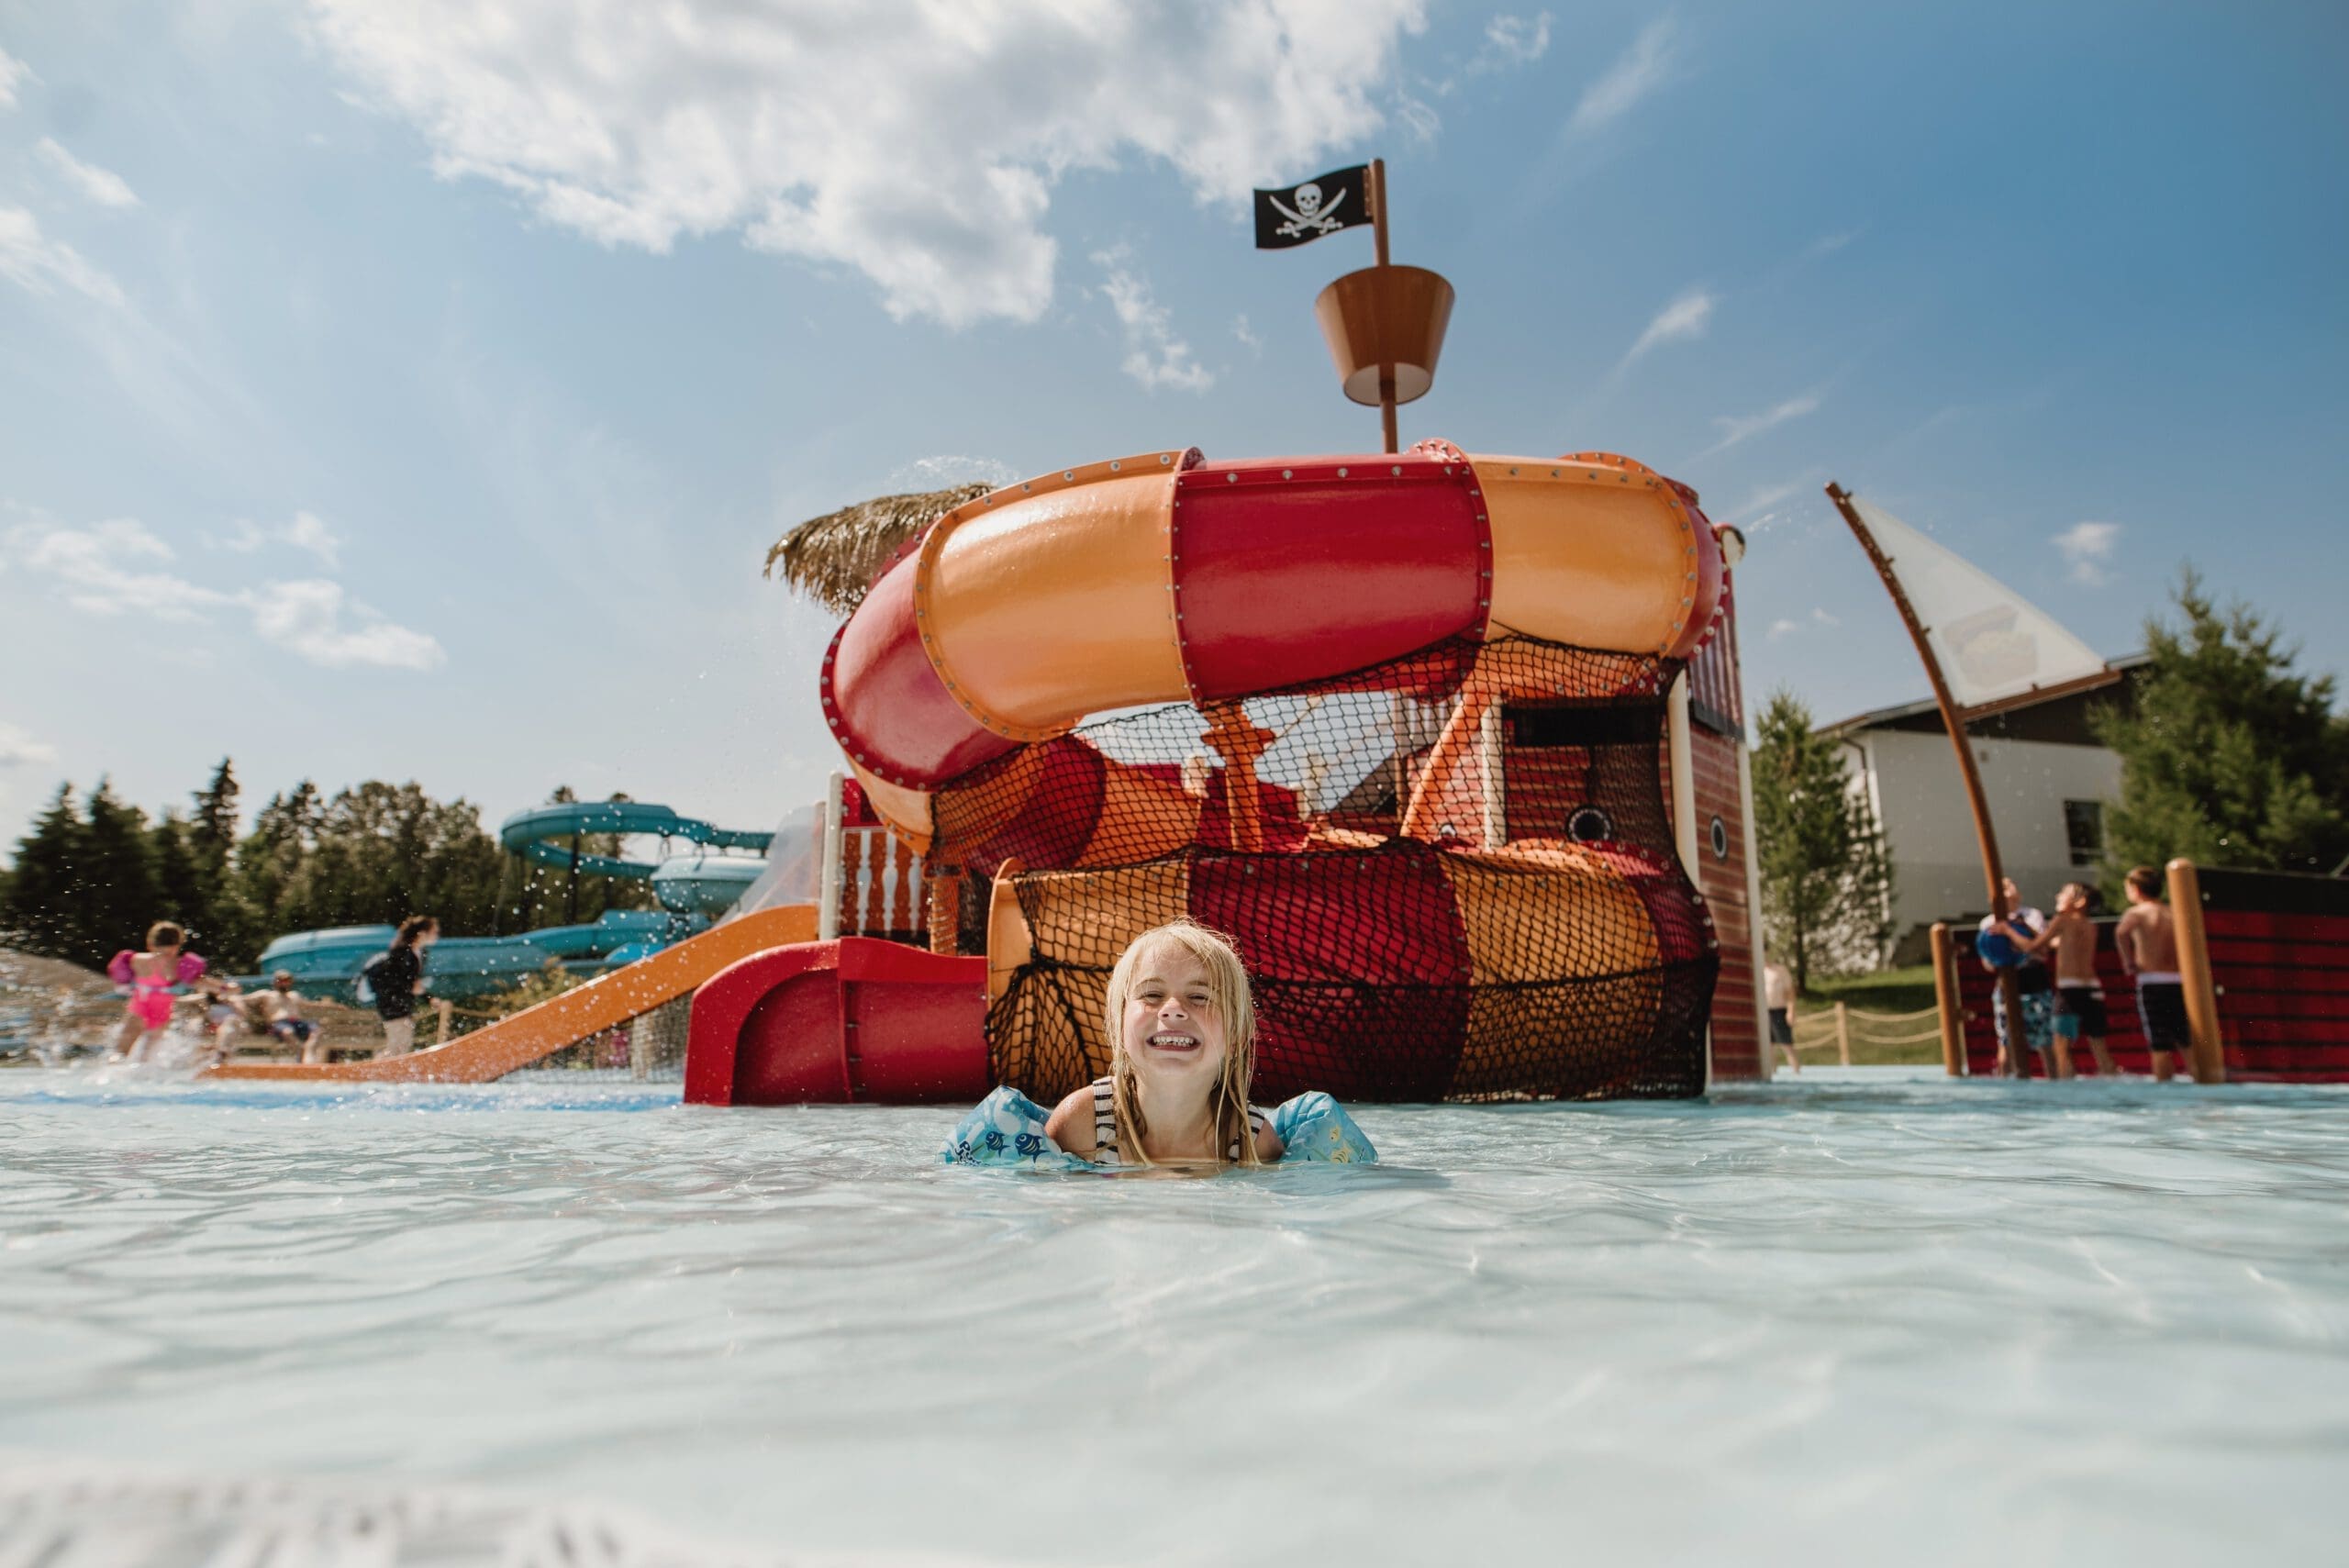 Un enfant joyeux aux cheveux blonds souriant dans une piscine, avec en arrière-plan un grand toboggan gonflable sur le thème d'un bateau pirate sous un ciel ensoleillé.